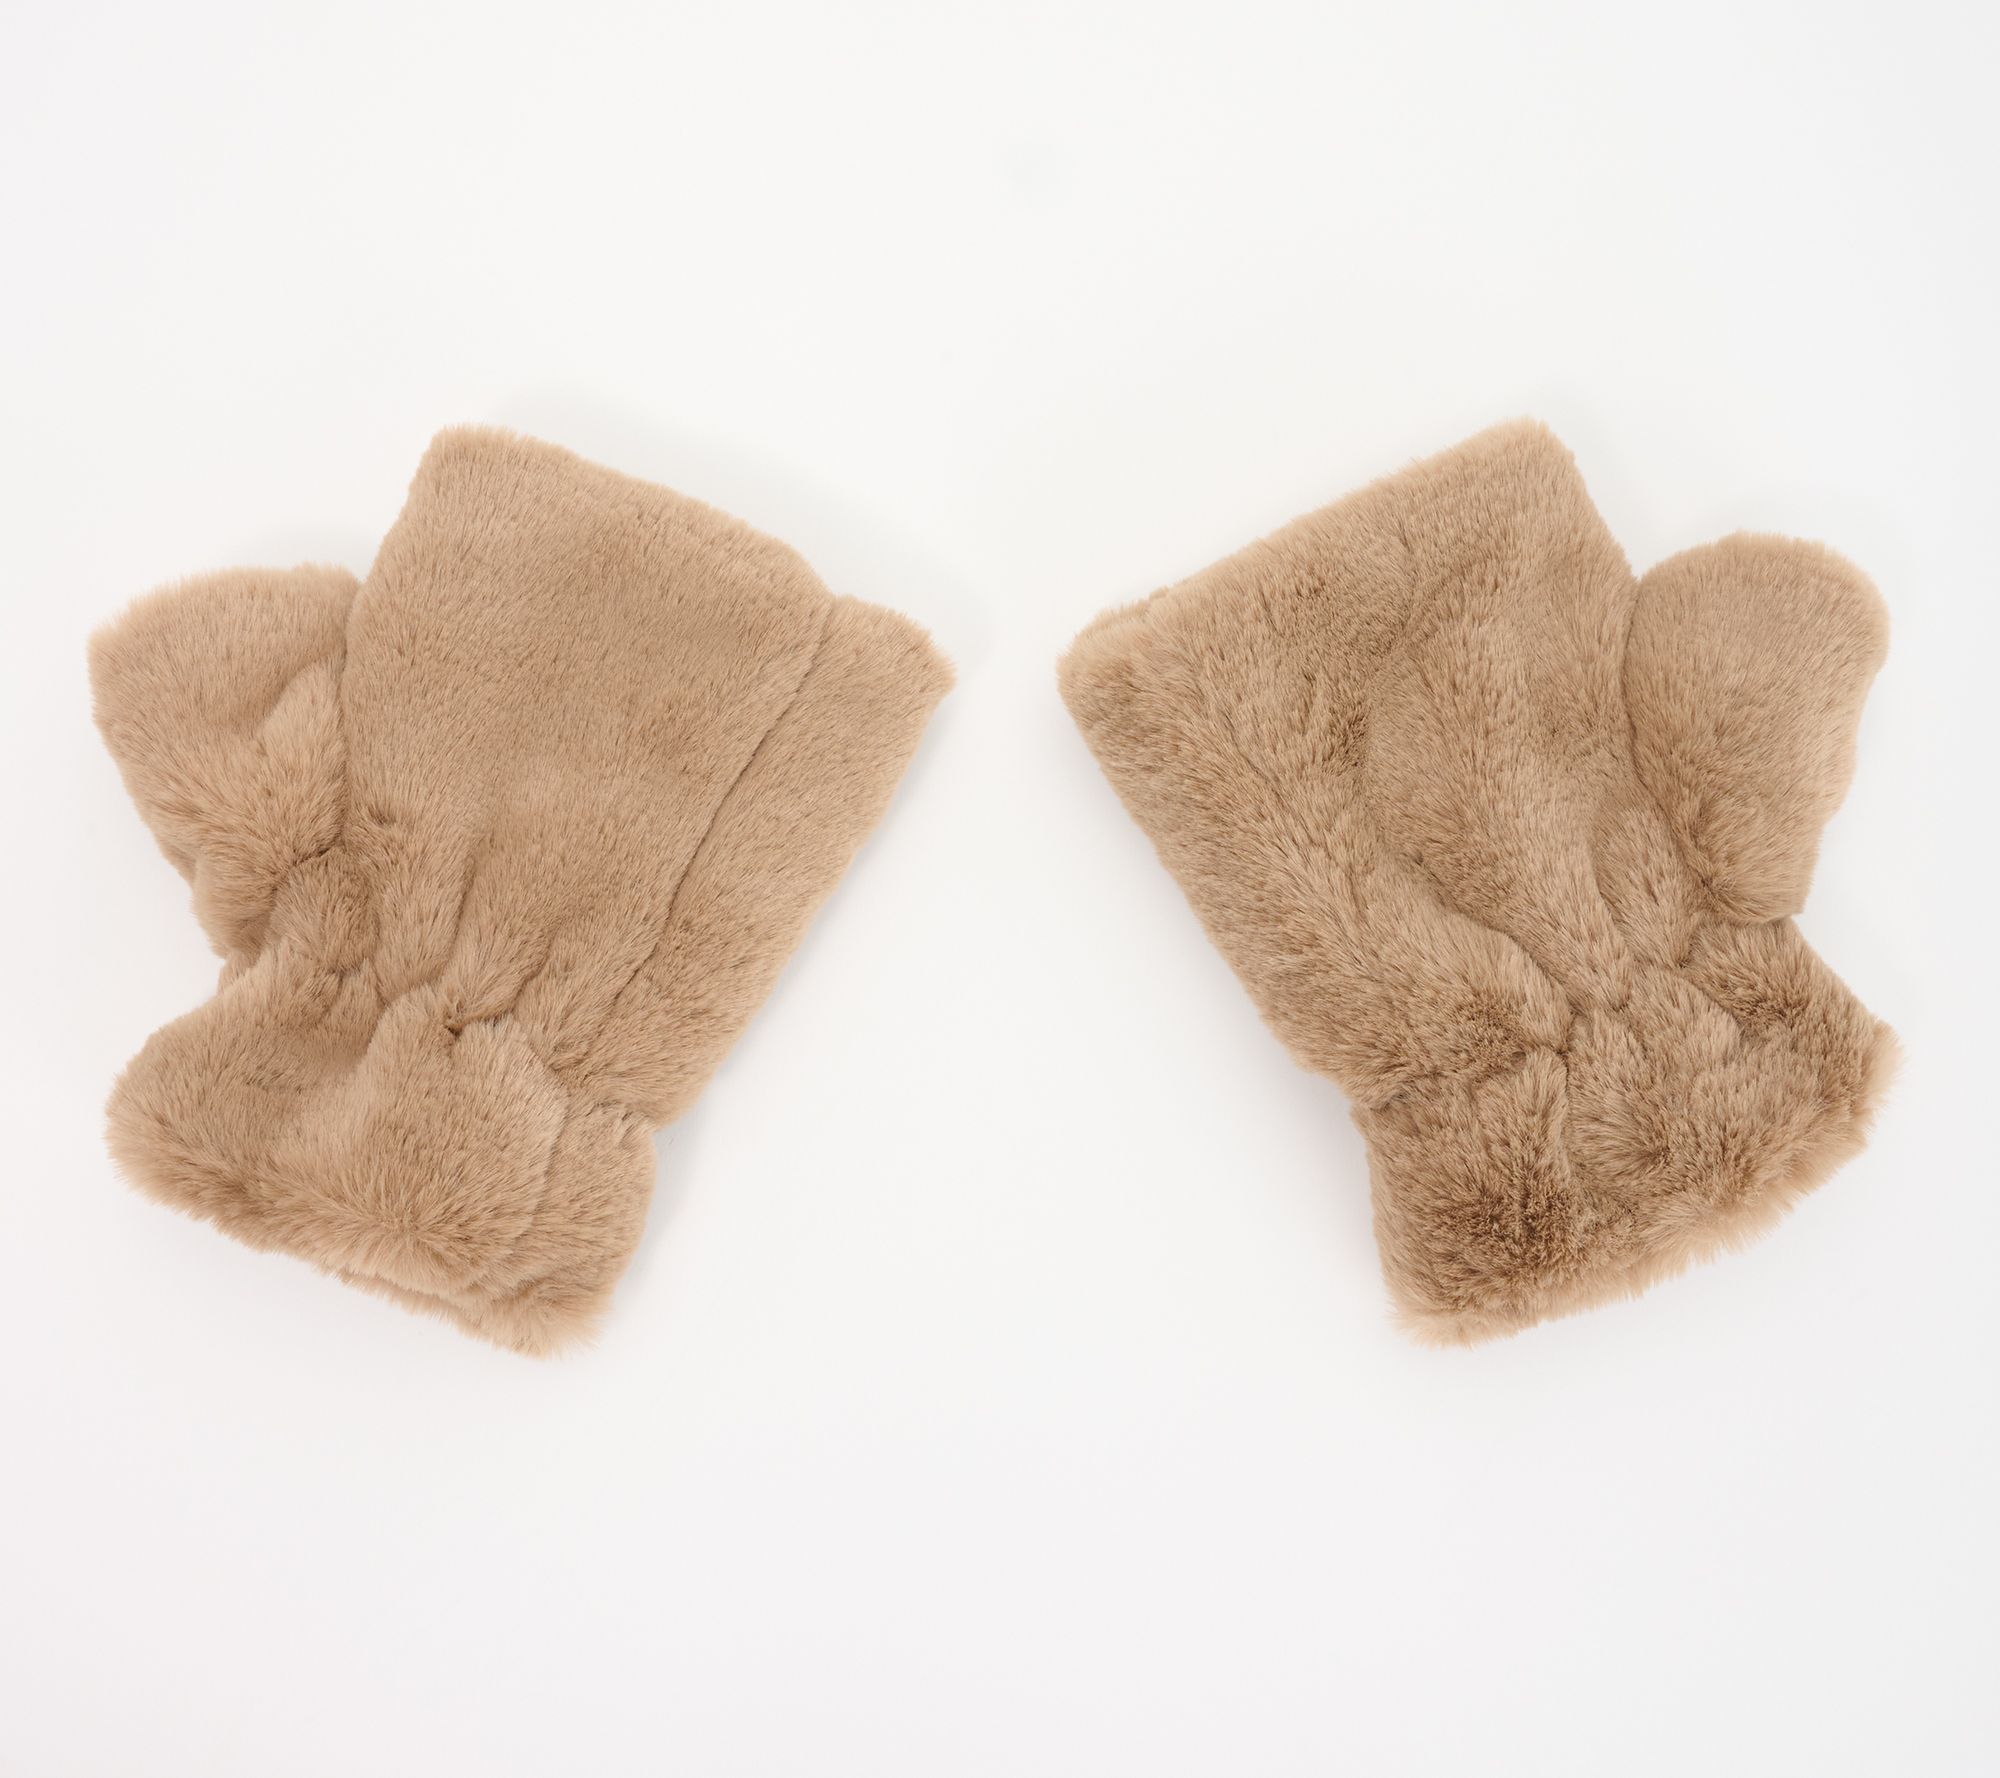 Hamlet Writing Gloves | White Print Fingerless Gloves